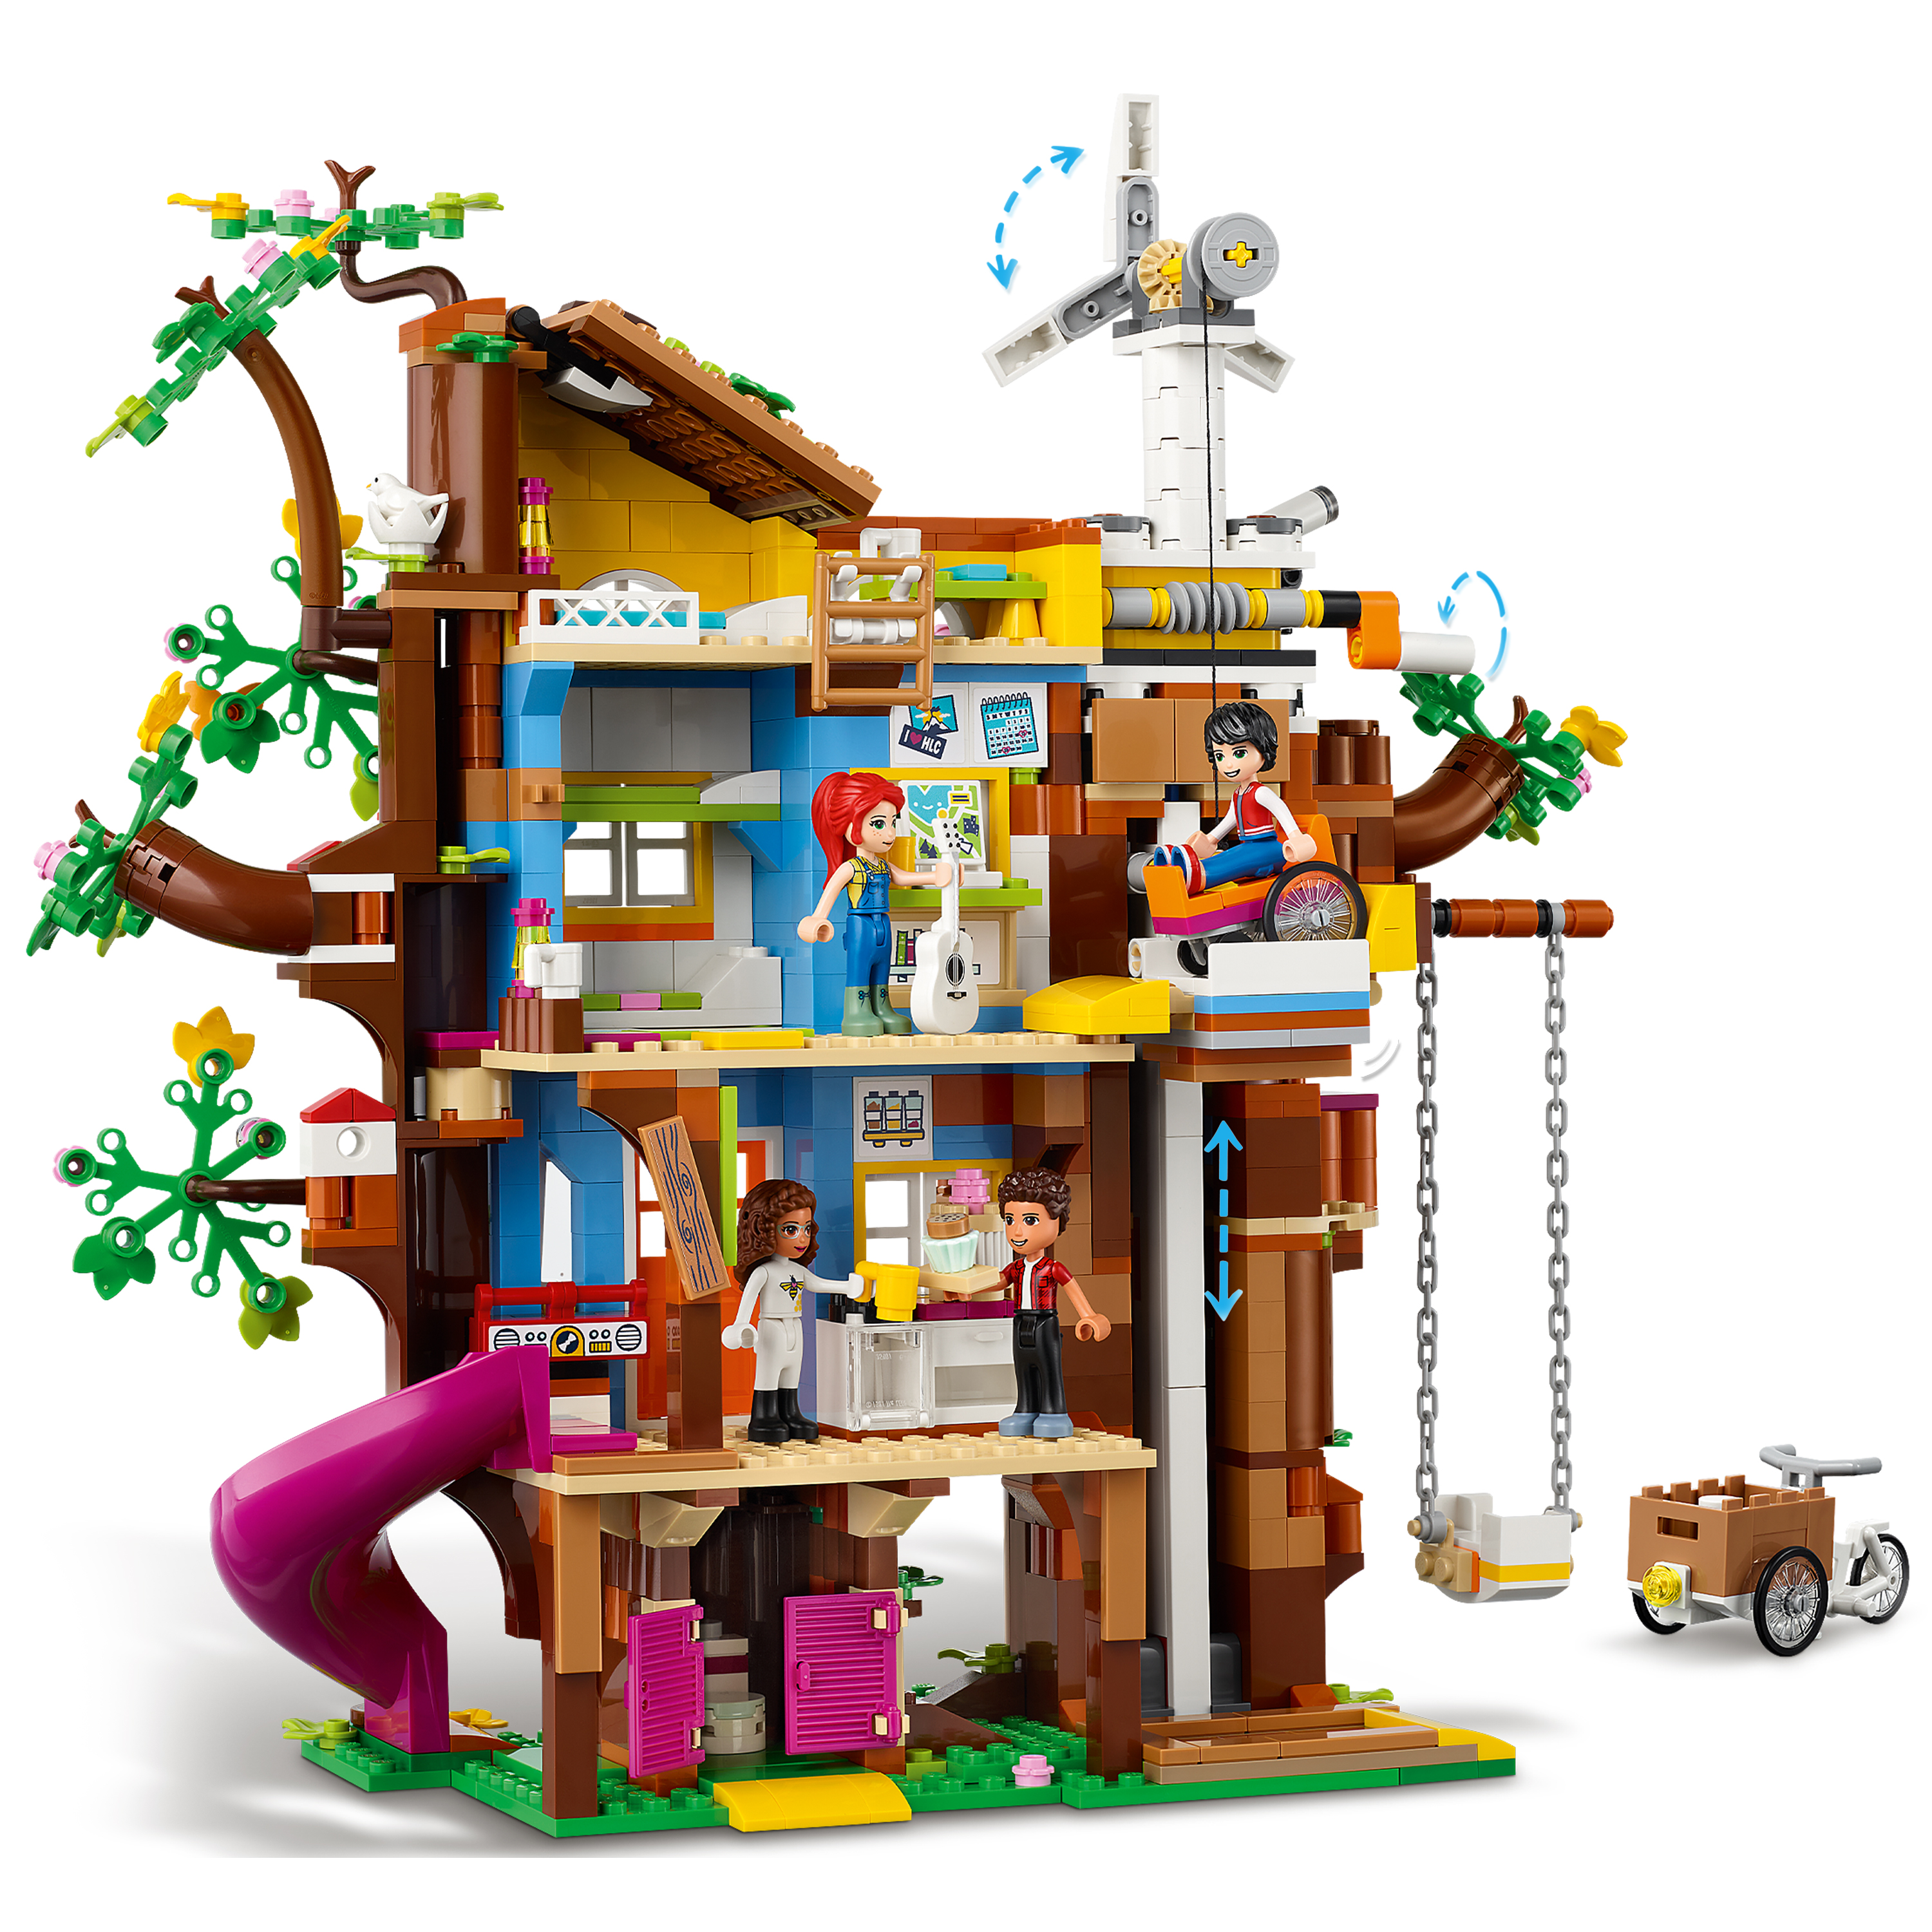 LEGO Friends Casa sull'Albero dell'Amicizia con Mini Bamboline di Mia e River, 41703, , large